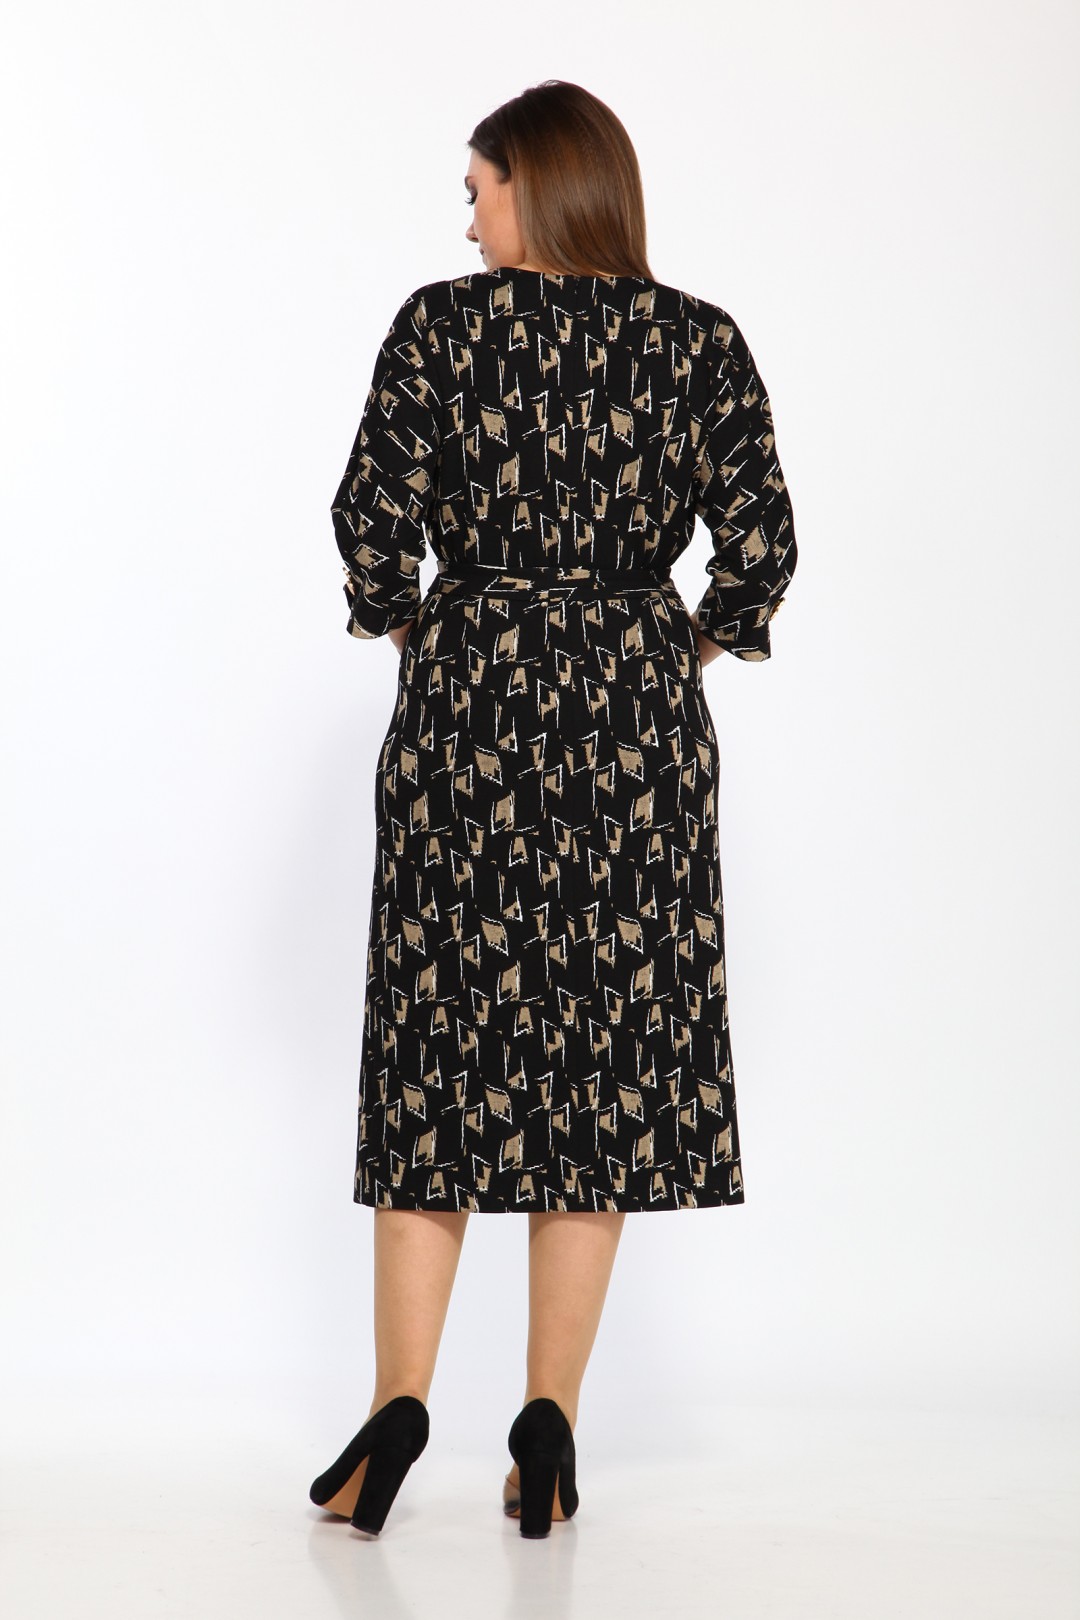 Платье LadyStyleClassic 2175/3 Черный с бежевым Принт